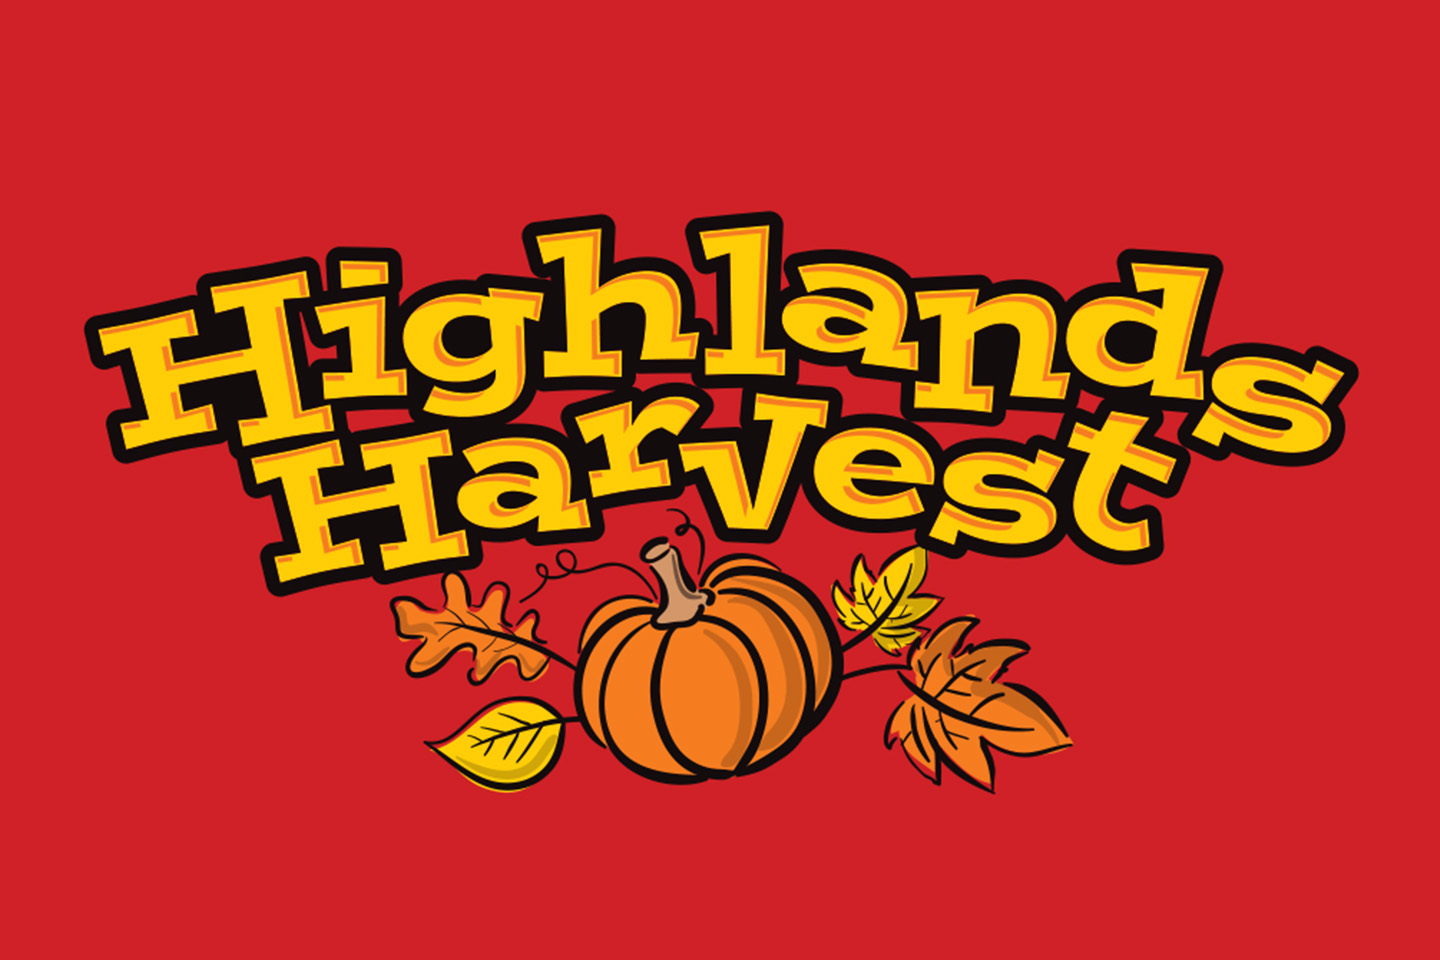 Highlands Harvest